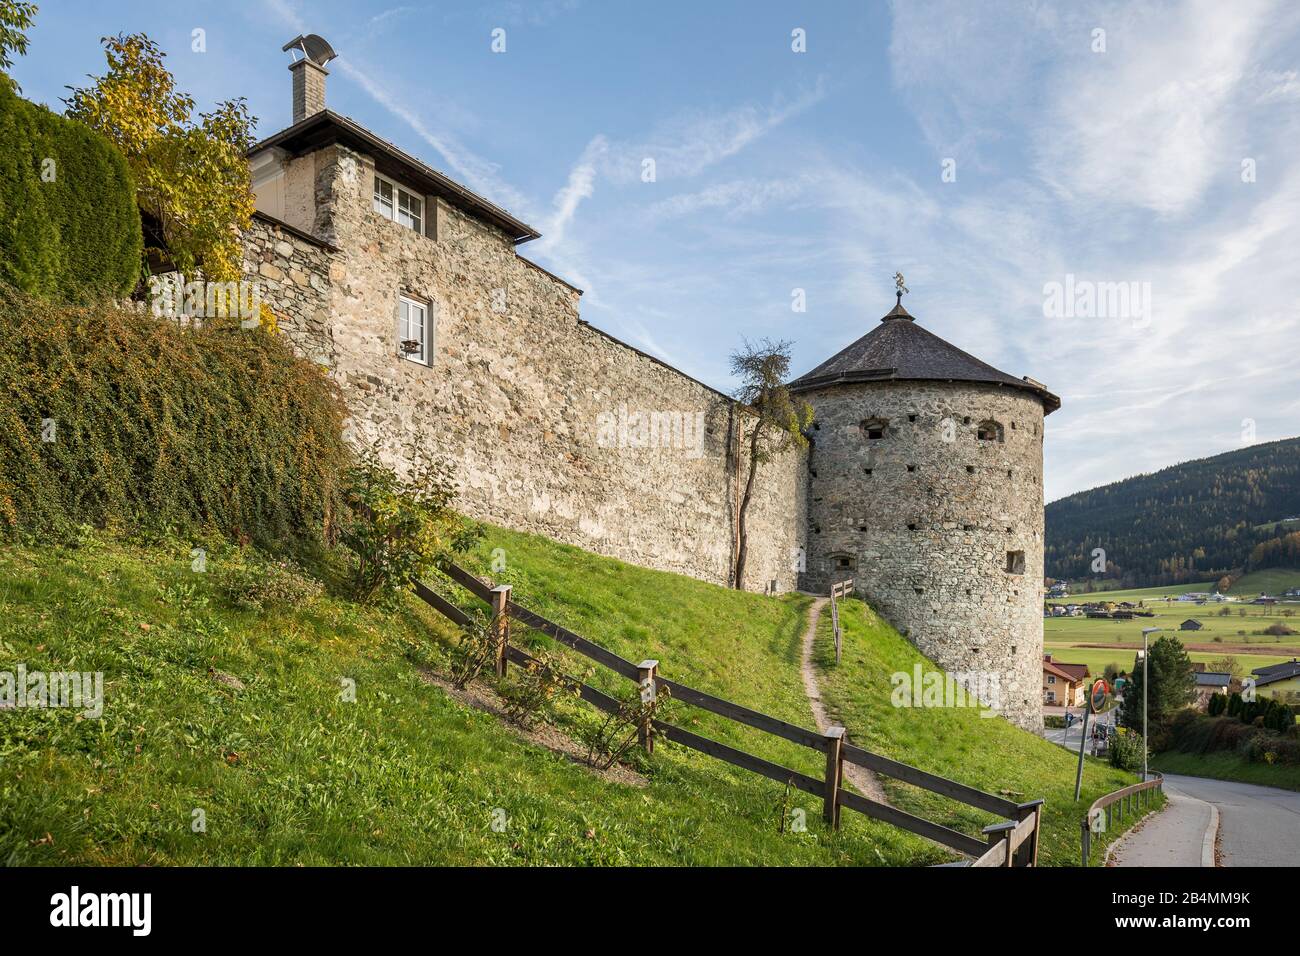 Historische Stadtmauer und Hexenturm, Radstadt, Pongau, Land Salzburg, Österreich, Oktober 2019 Stock Photo